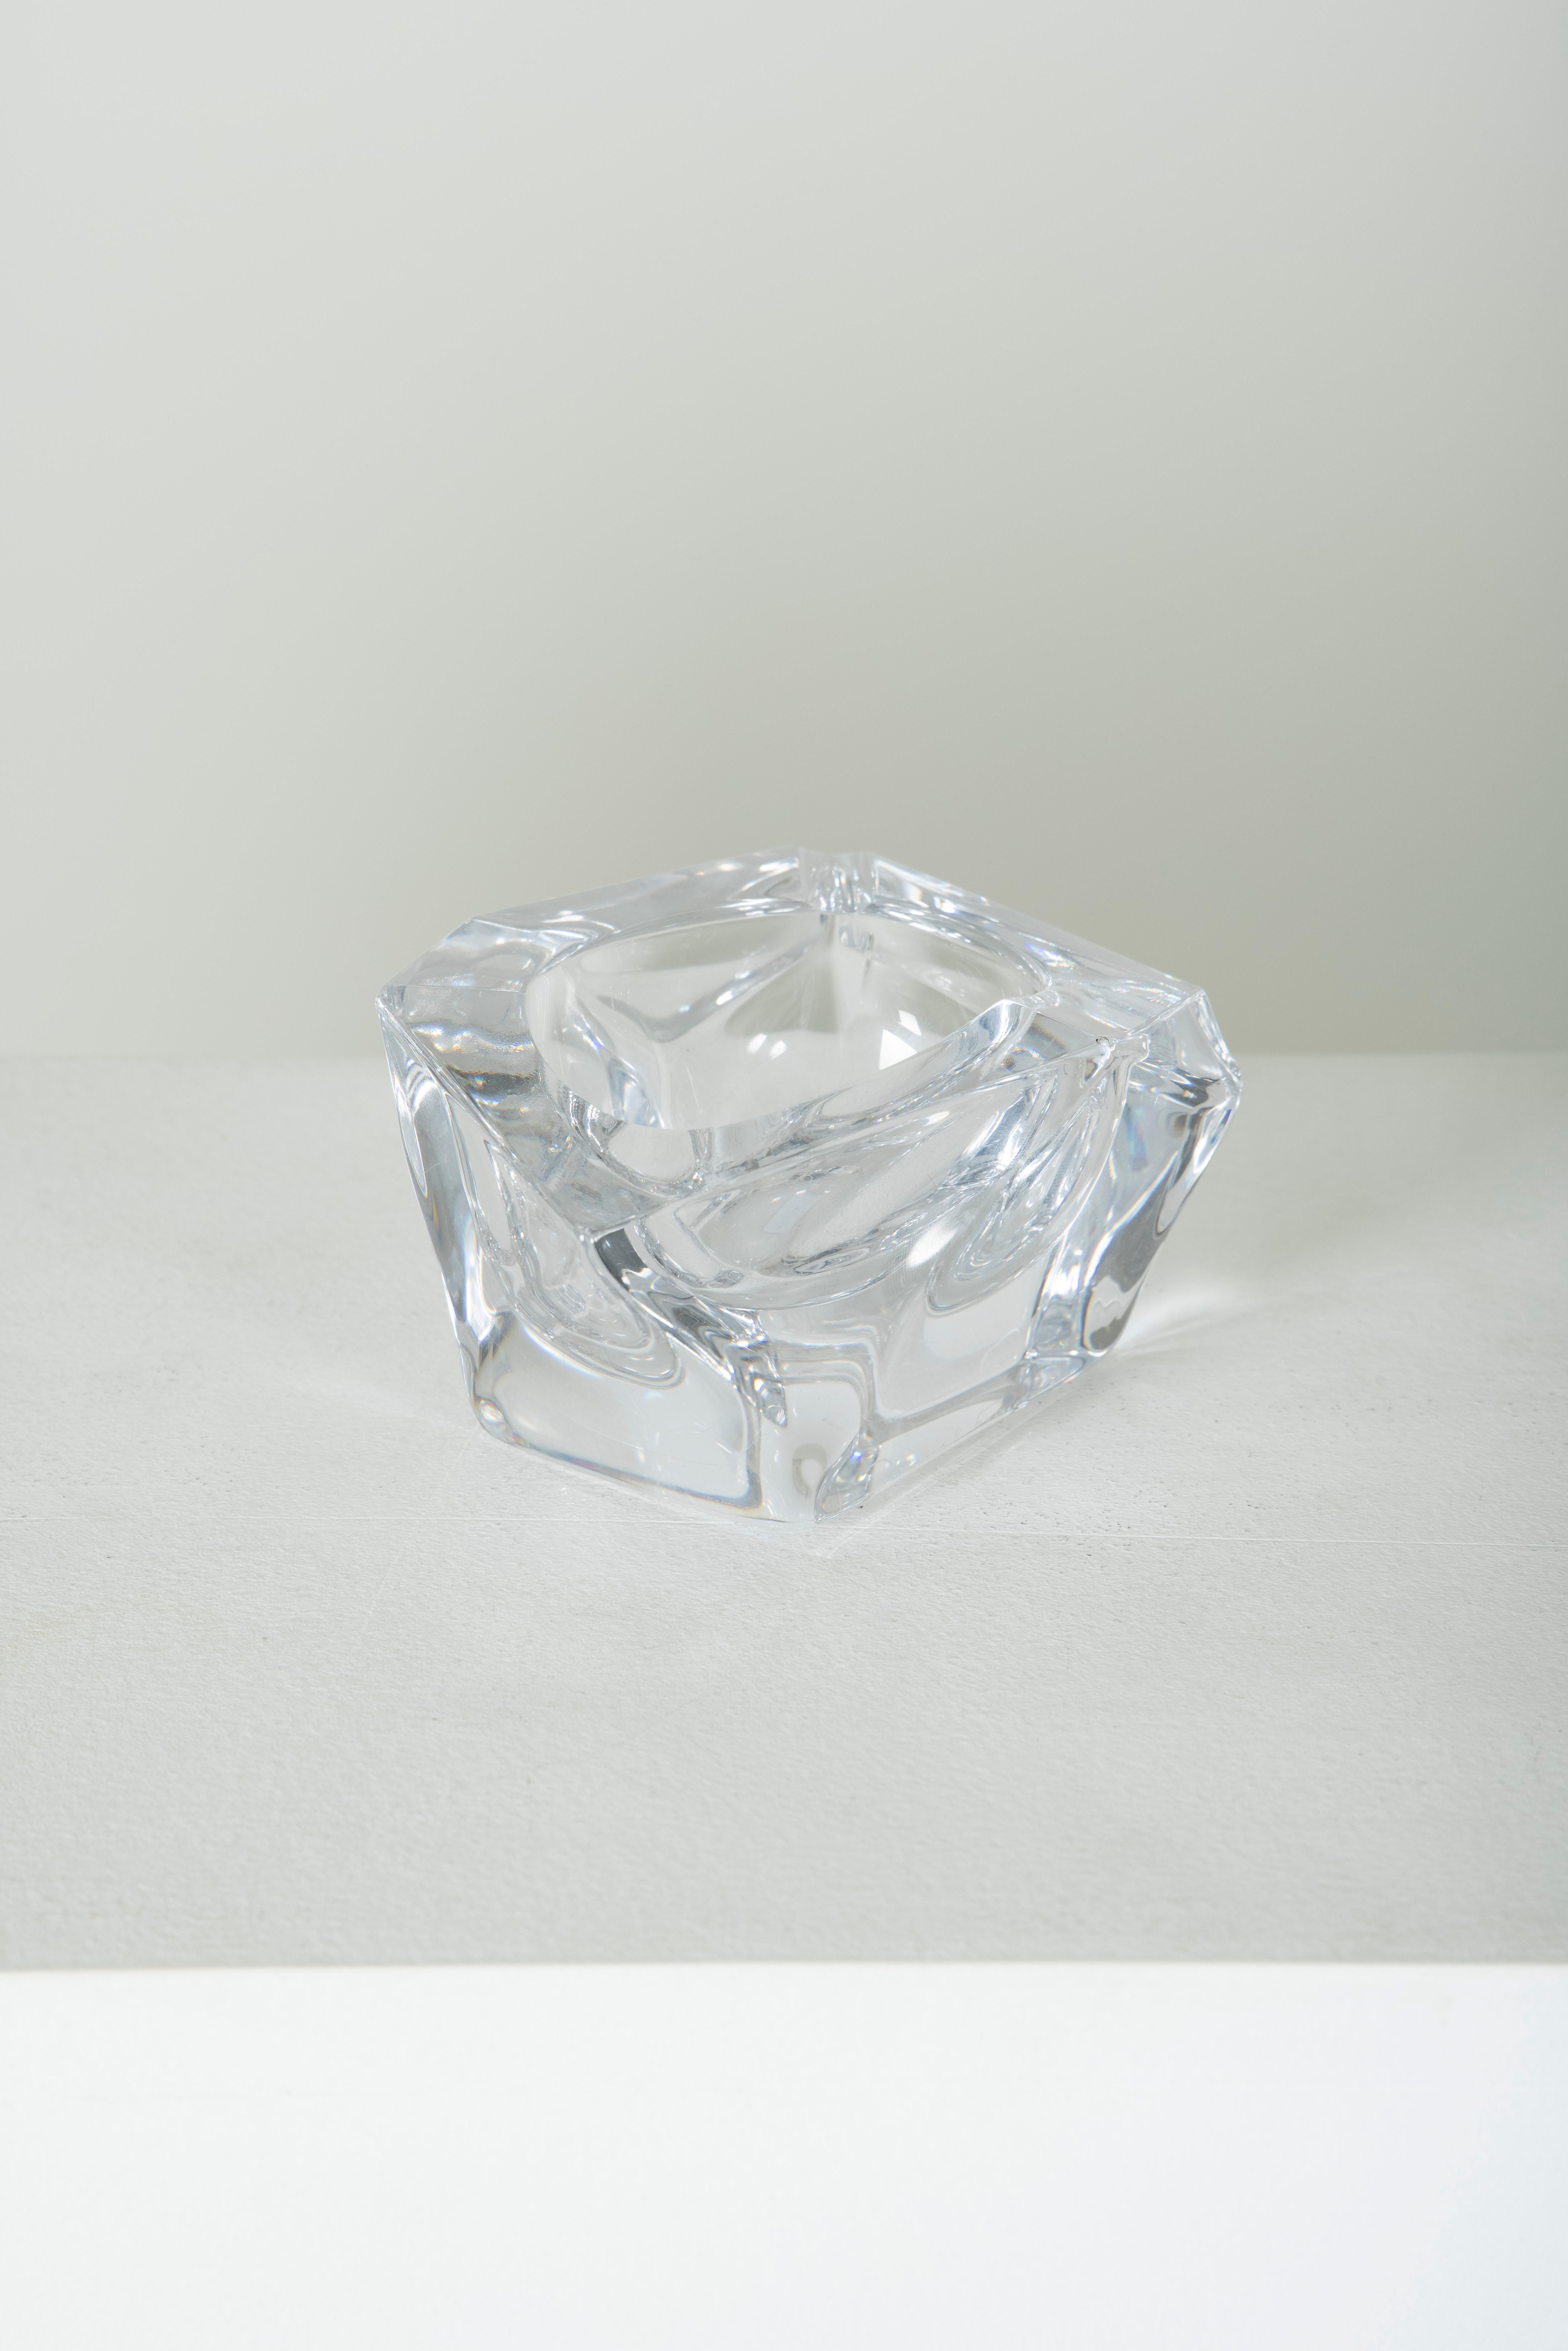 French Trinket Bowl Polyhedron Crystal Daum, France